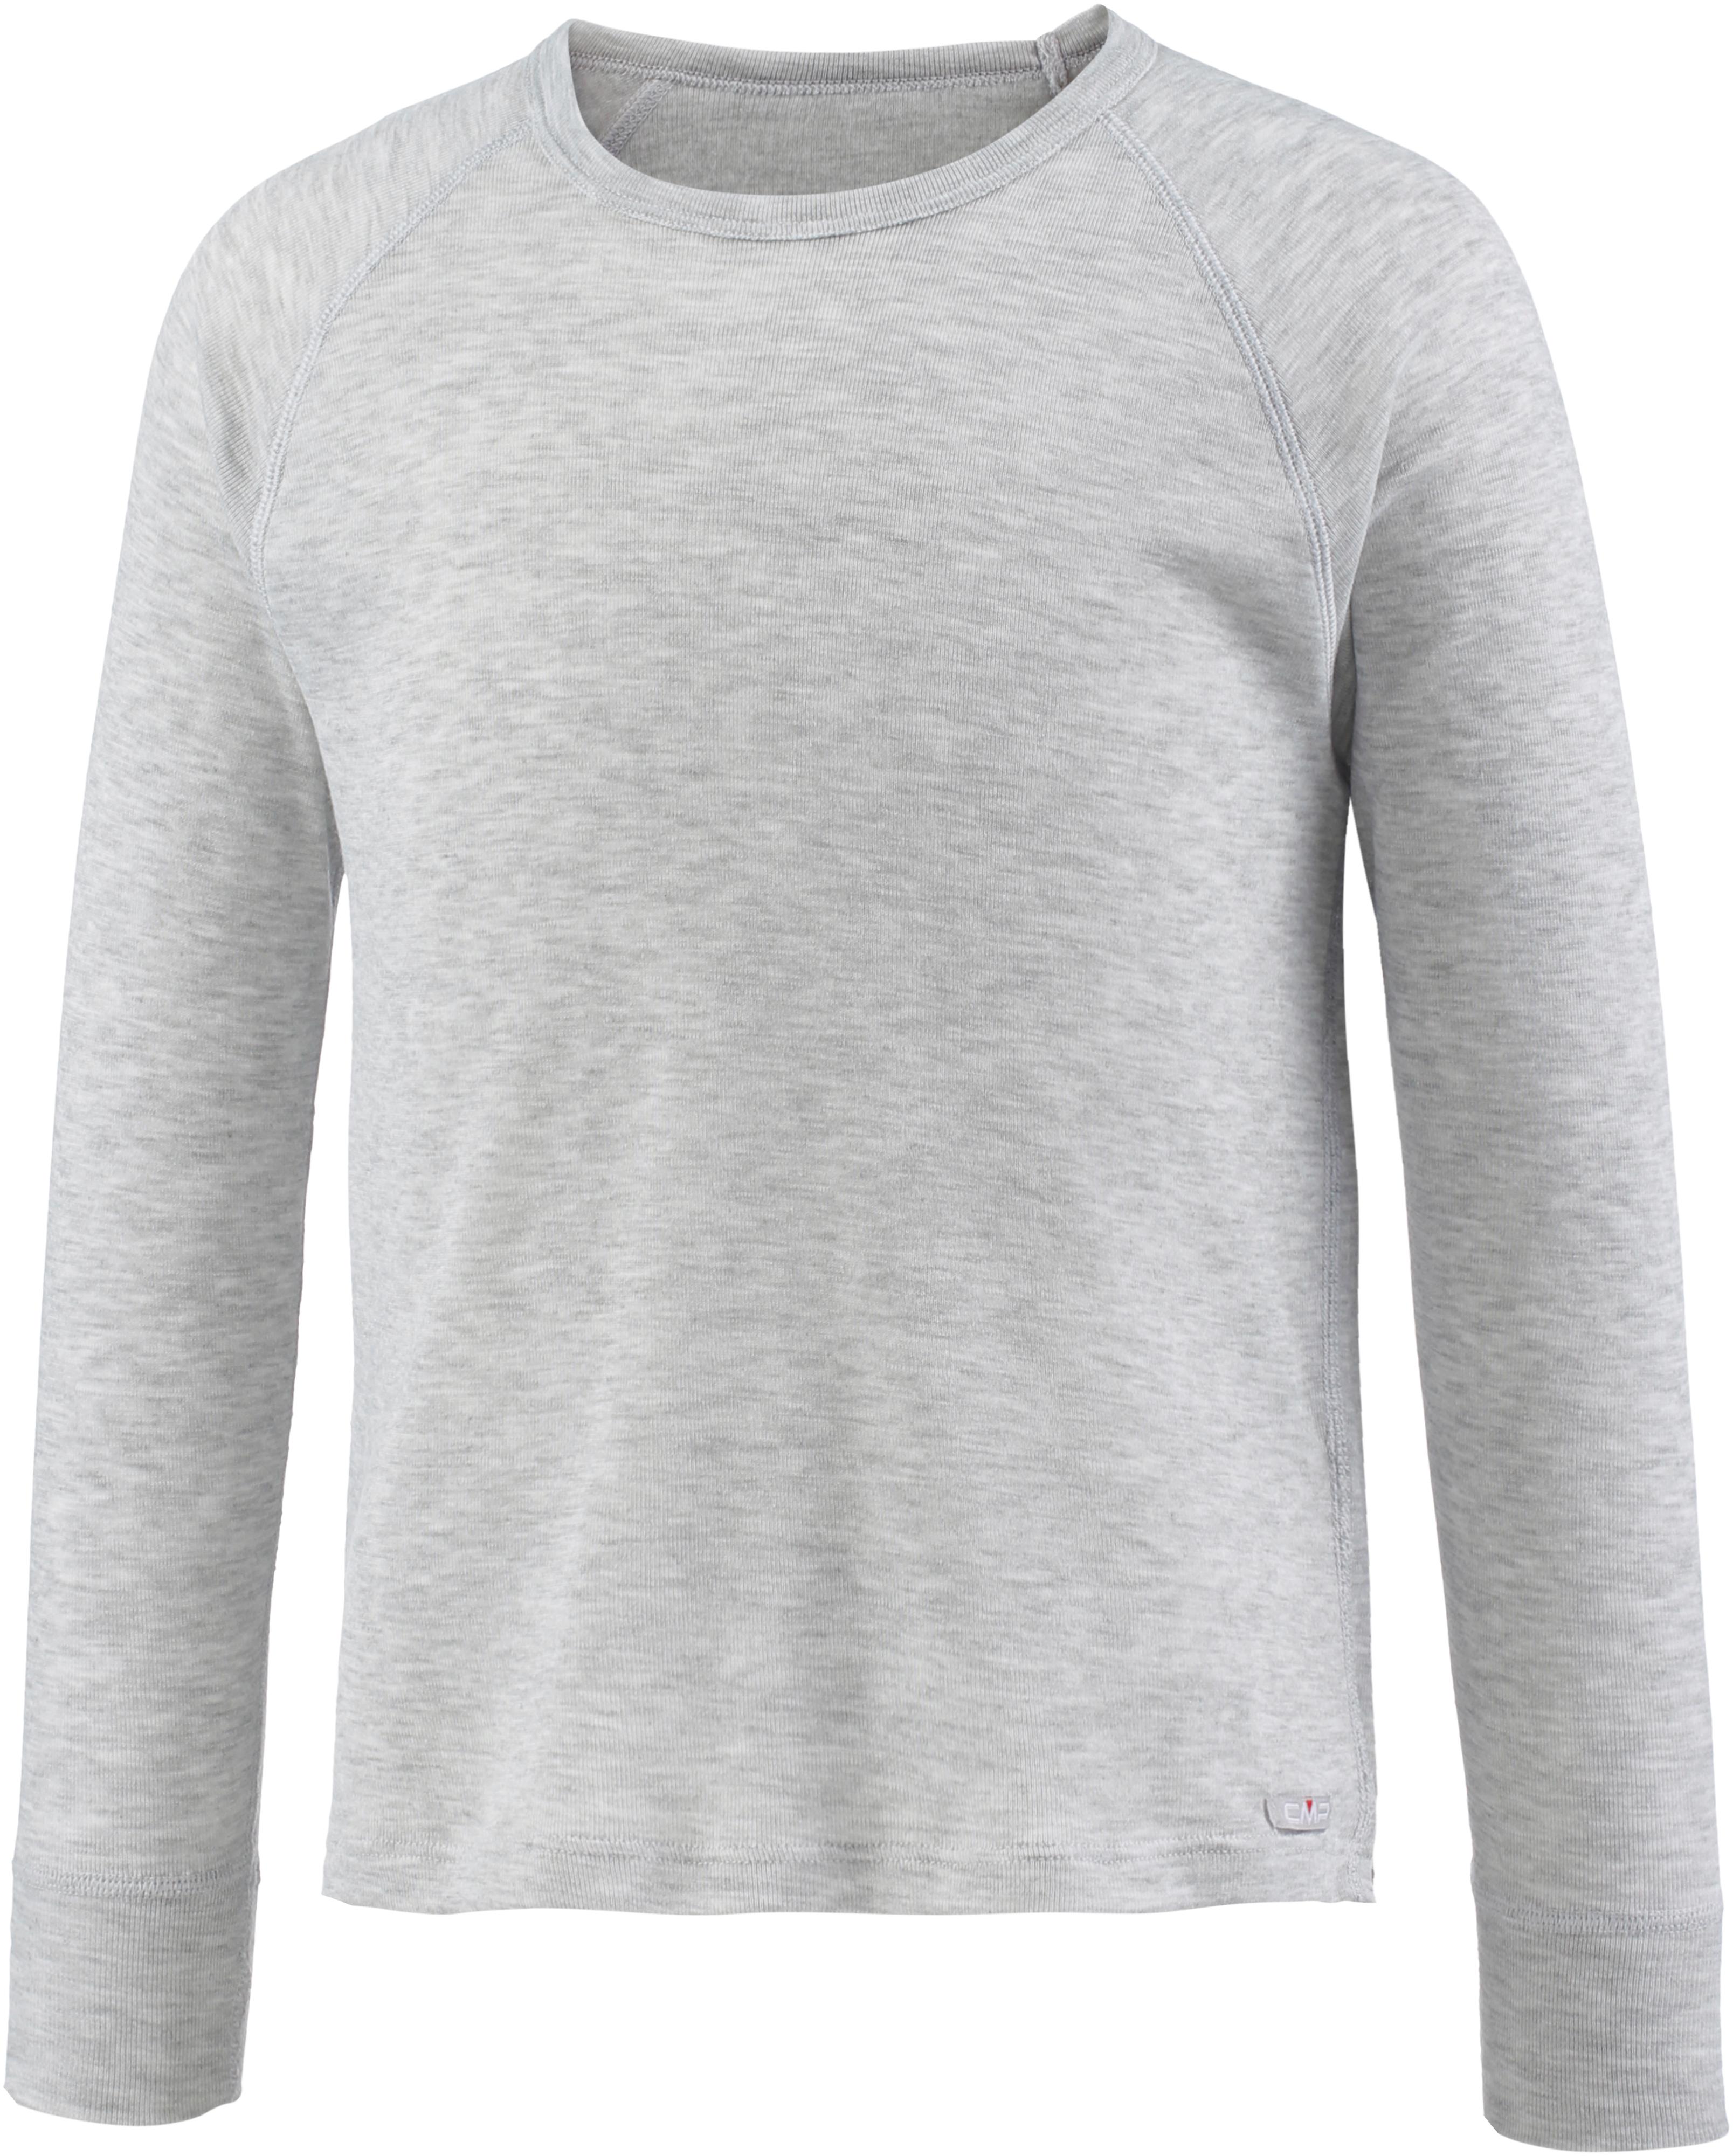 CMP Unterhemd Jungen grigio melange im Online Shop von SportScheck kaufen